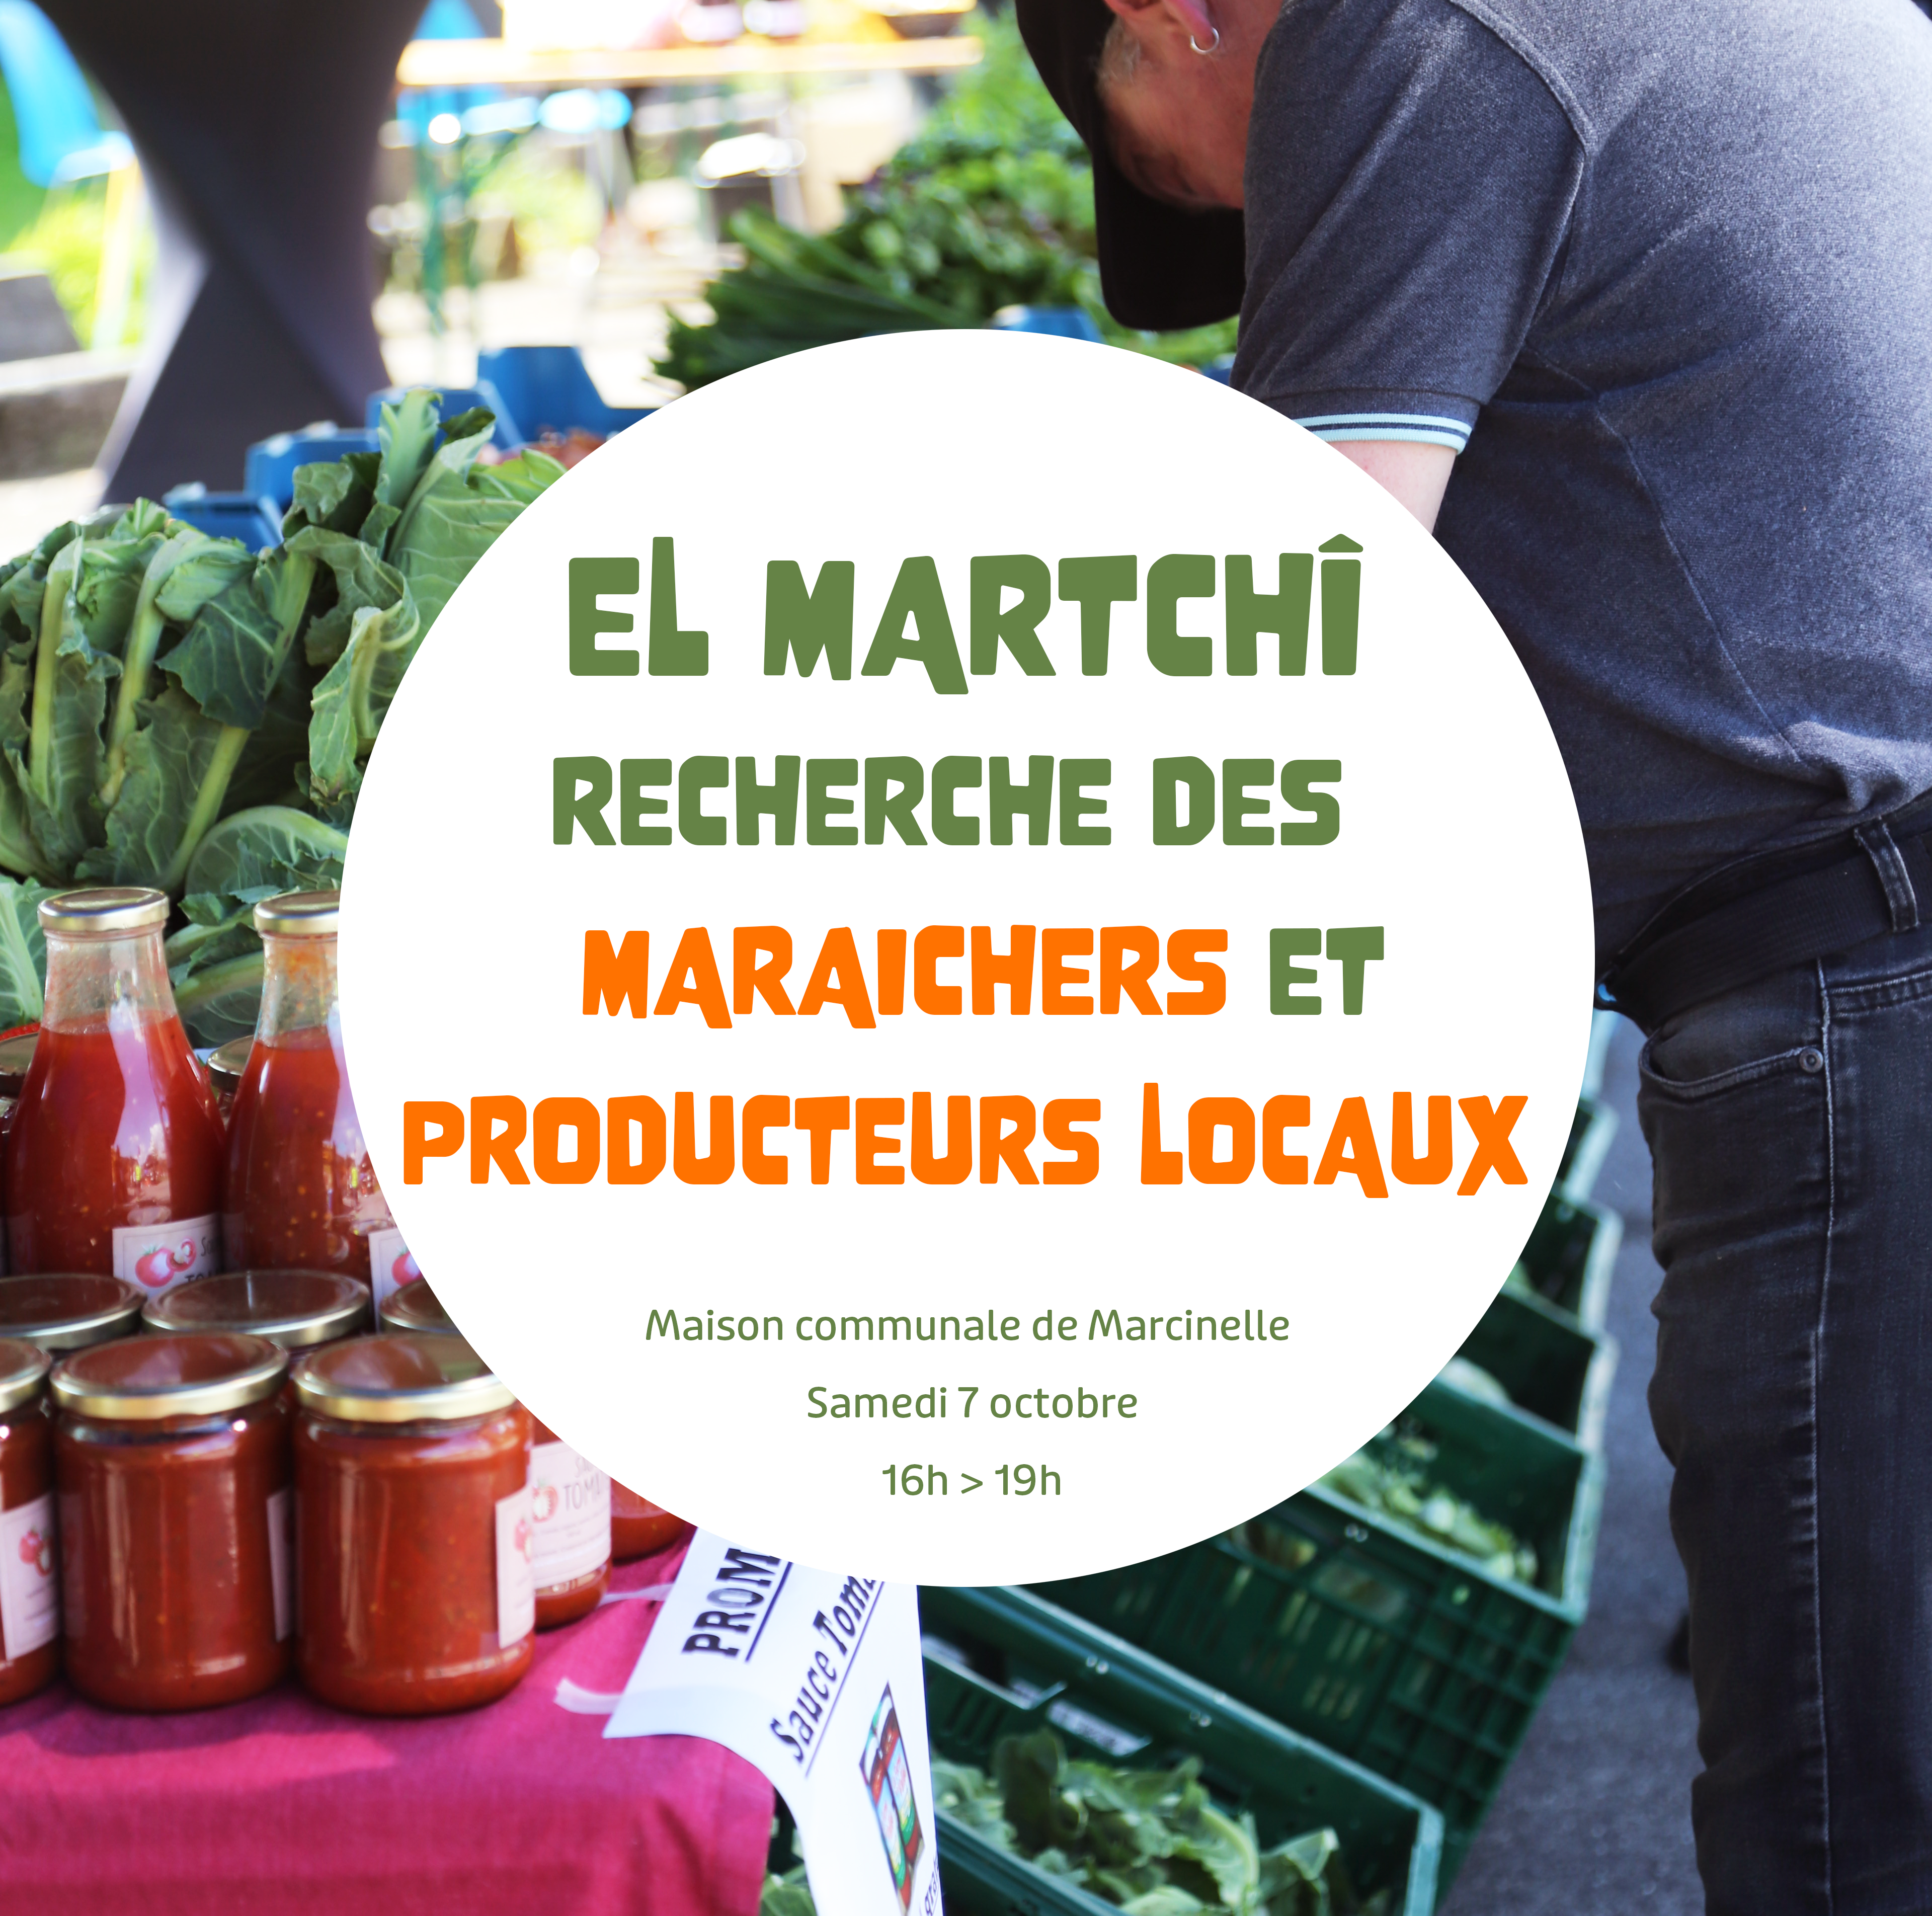 El Martchî recherche des vendeurs pour son prochain marché